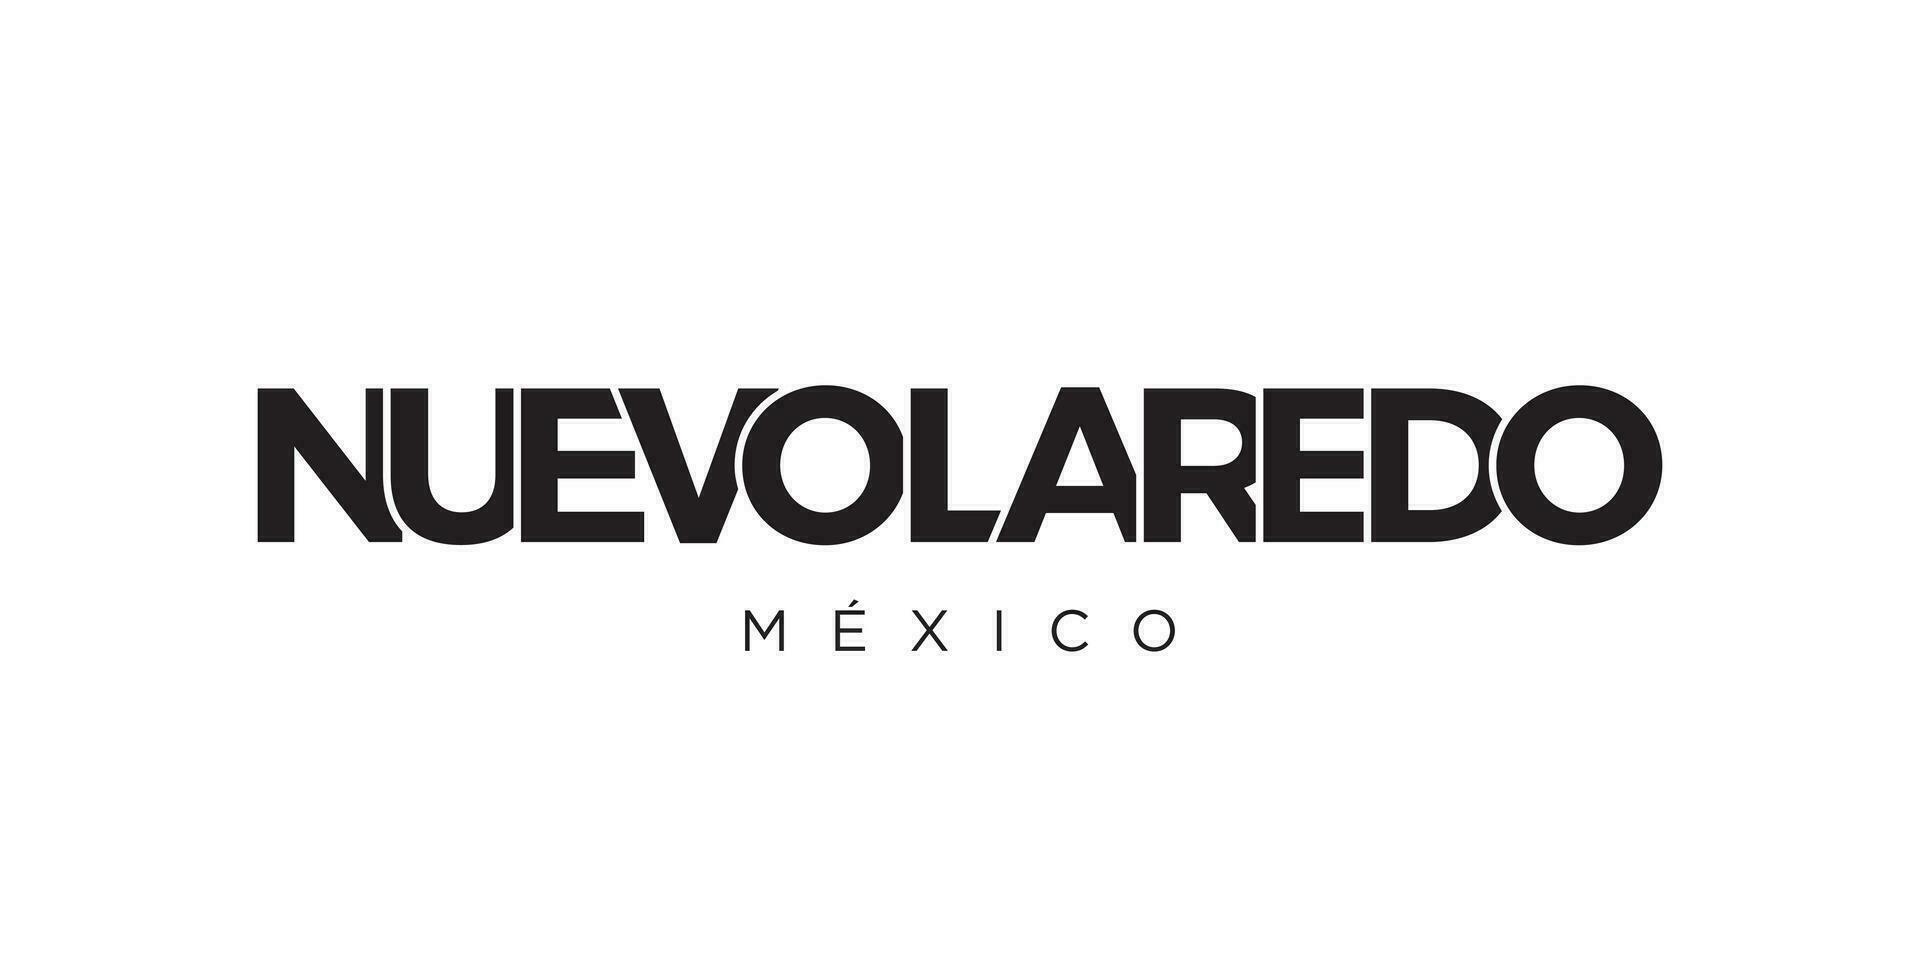 nuevo laredo in de Mexico embleem. de ontwerp Kenmerken een meetkundig stijl, vector illustratie met stoutmoedig typografie in een modern lettertype. de grafisch leuze belettering.